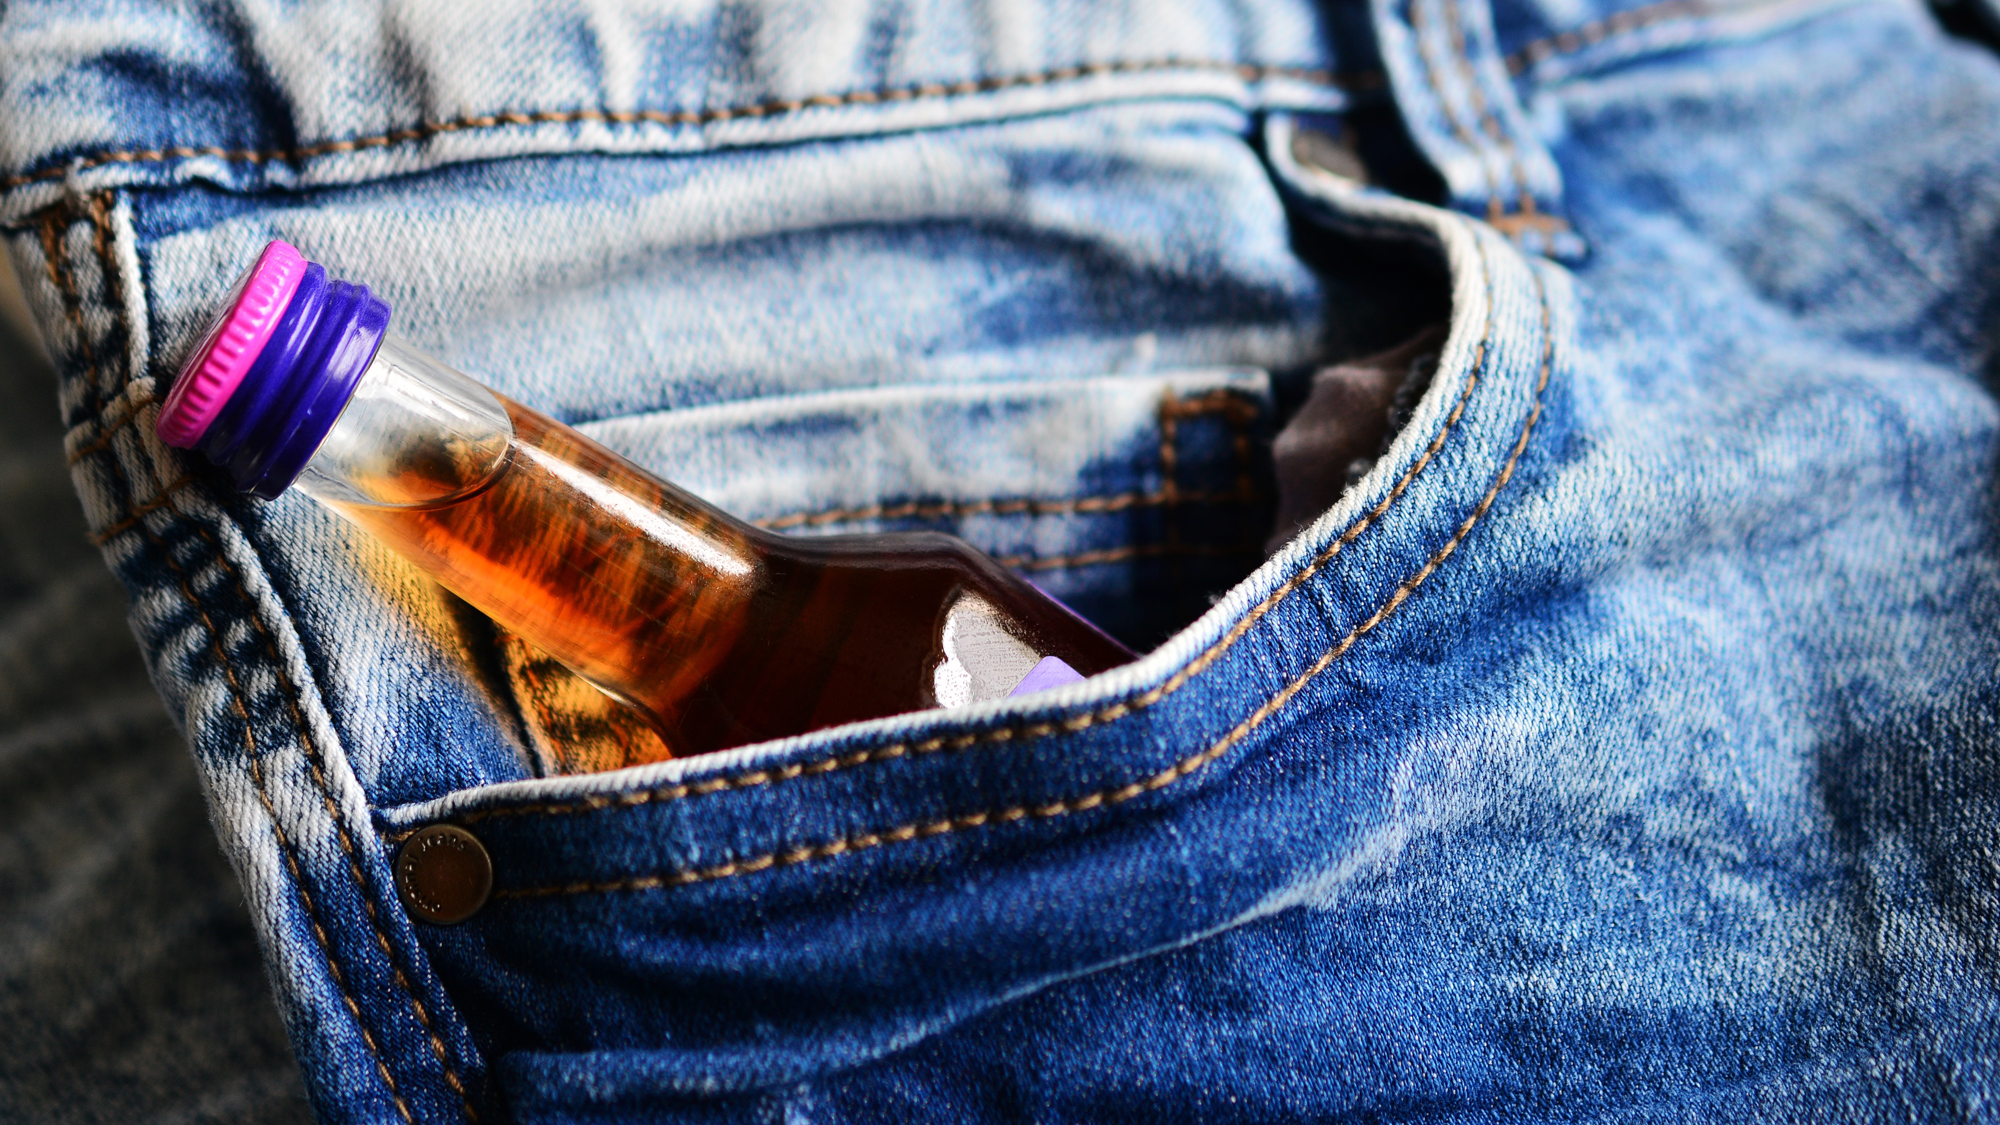 Jeans-Hosentasche in der sich eine kleine Flasche Alkohol befindet